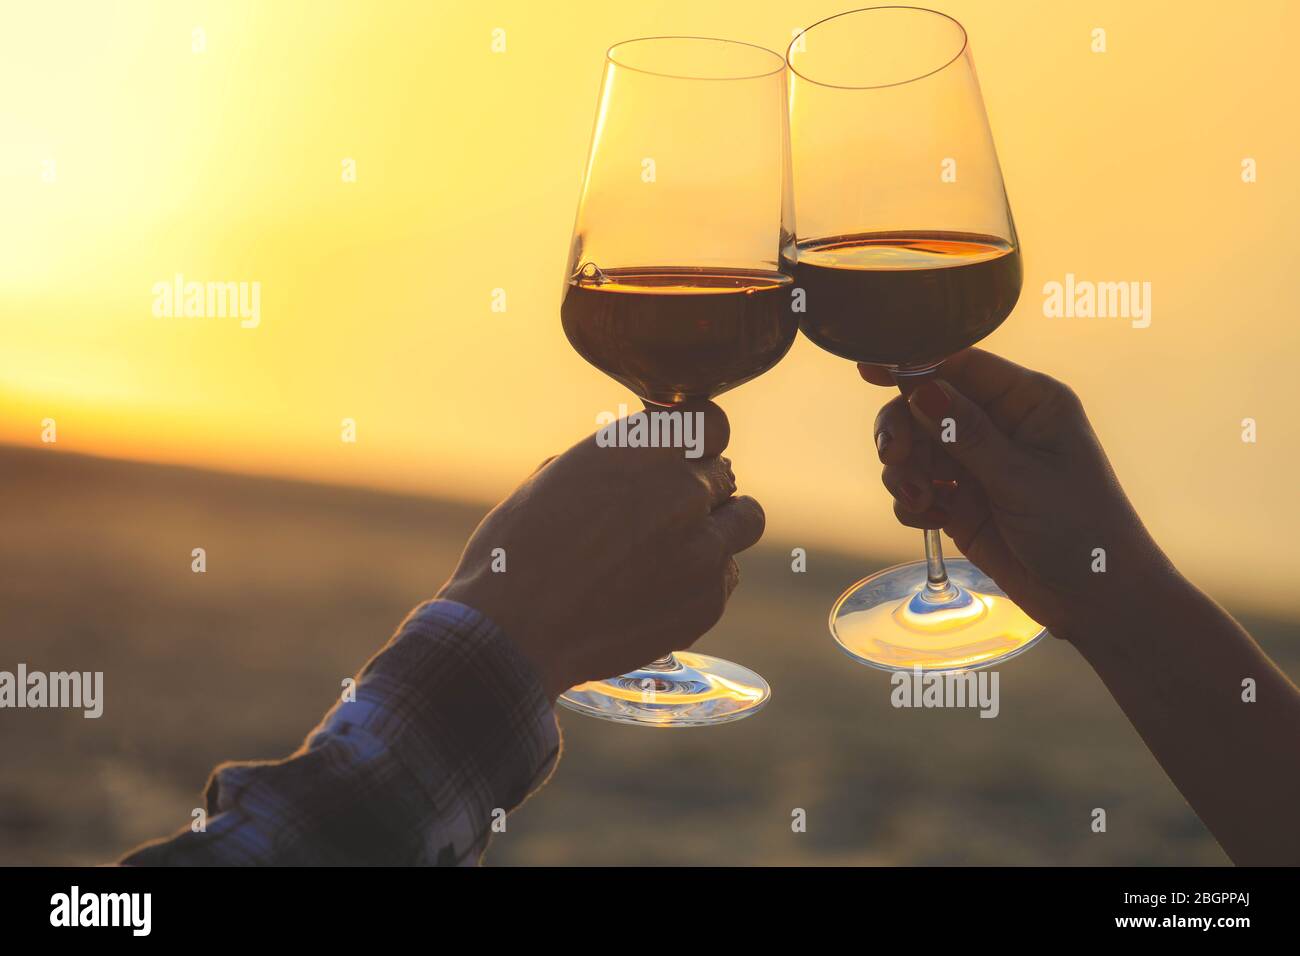 Hände halten Rotweingläser auf Dune von Pyla während des Sonnenuntergangs, Feier Konzept Stockfoto